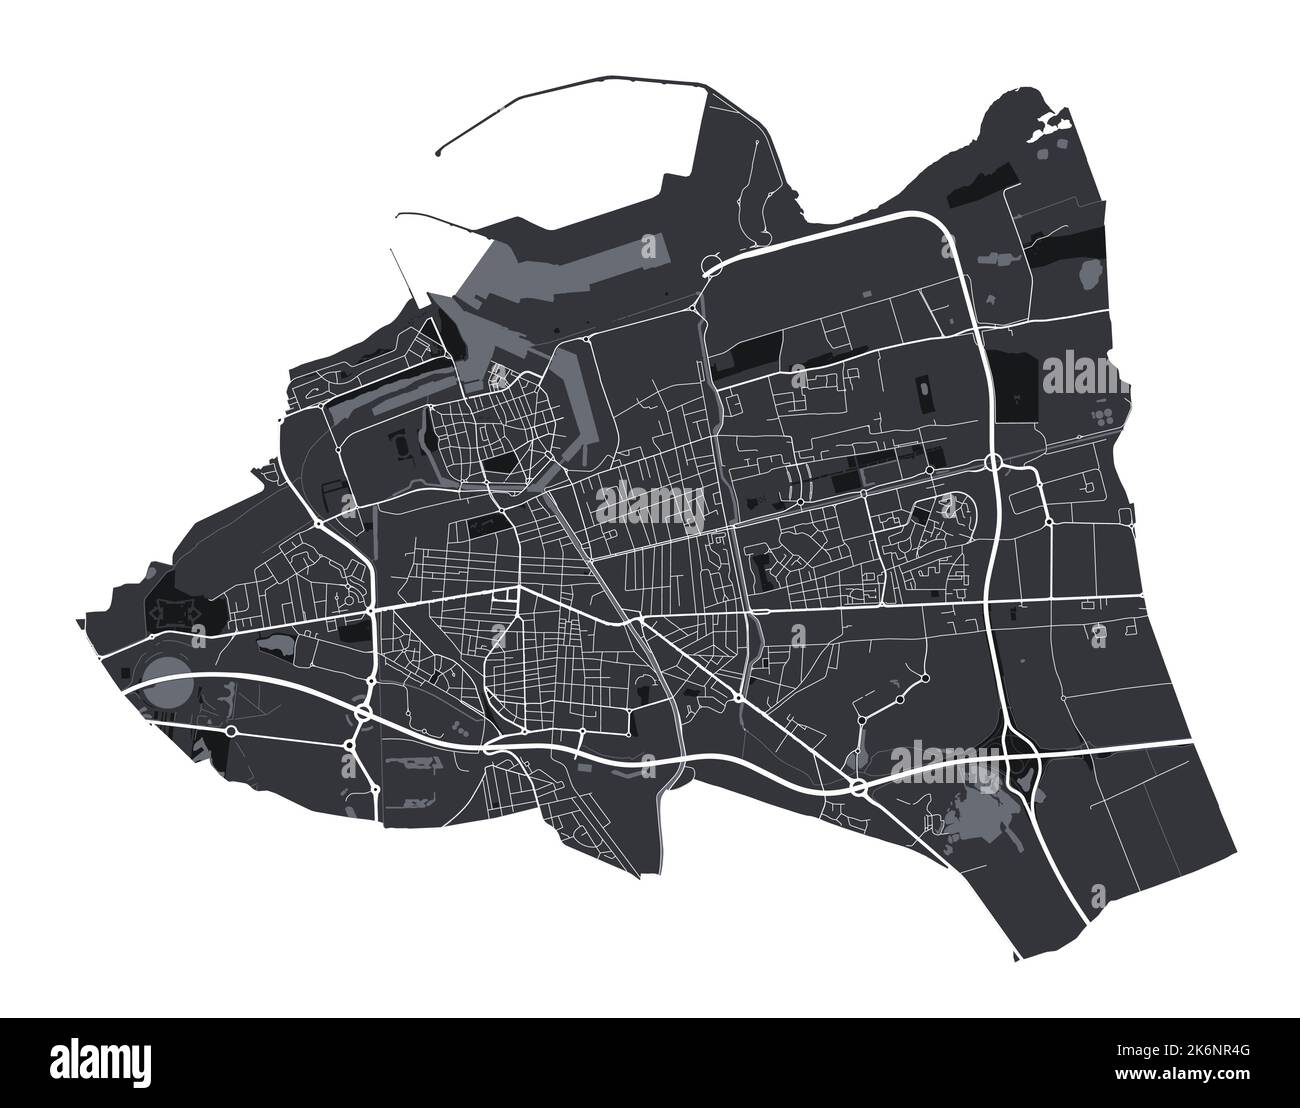 Mappa vettoriale di Calais. Mappa vettoriale dettagliata dell'area amministrativa della città di Calais. Poster sulla città con vista metropolitana sull'aria. Terra nera con strade bianche e AV Illustrazione Vettoriale